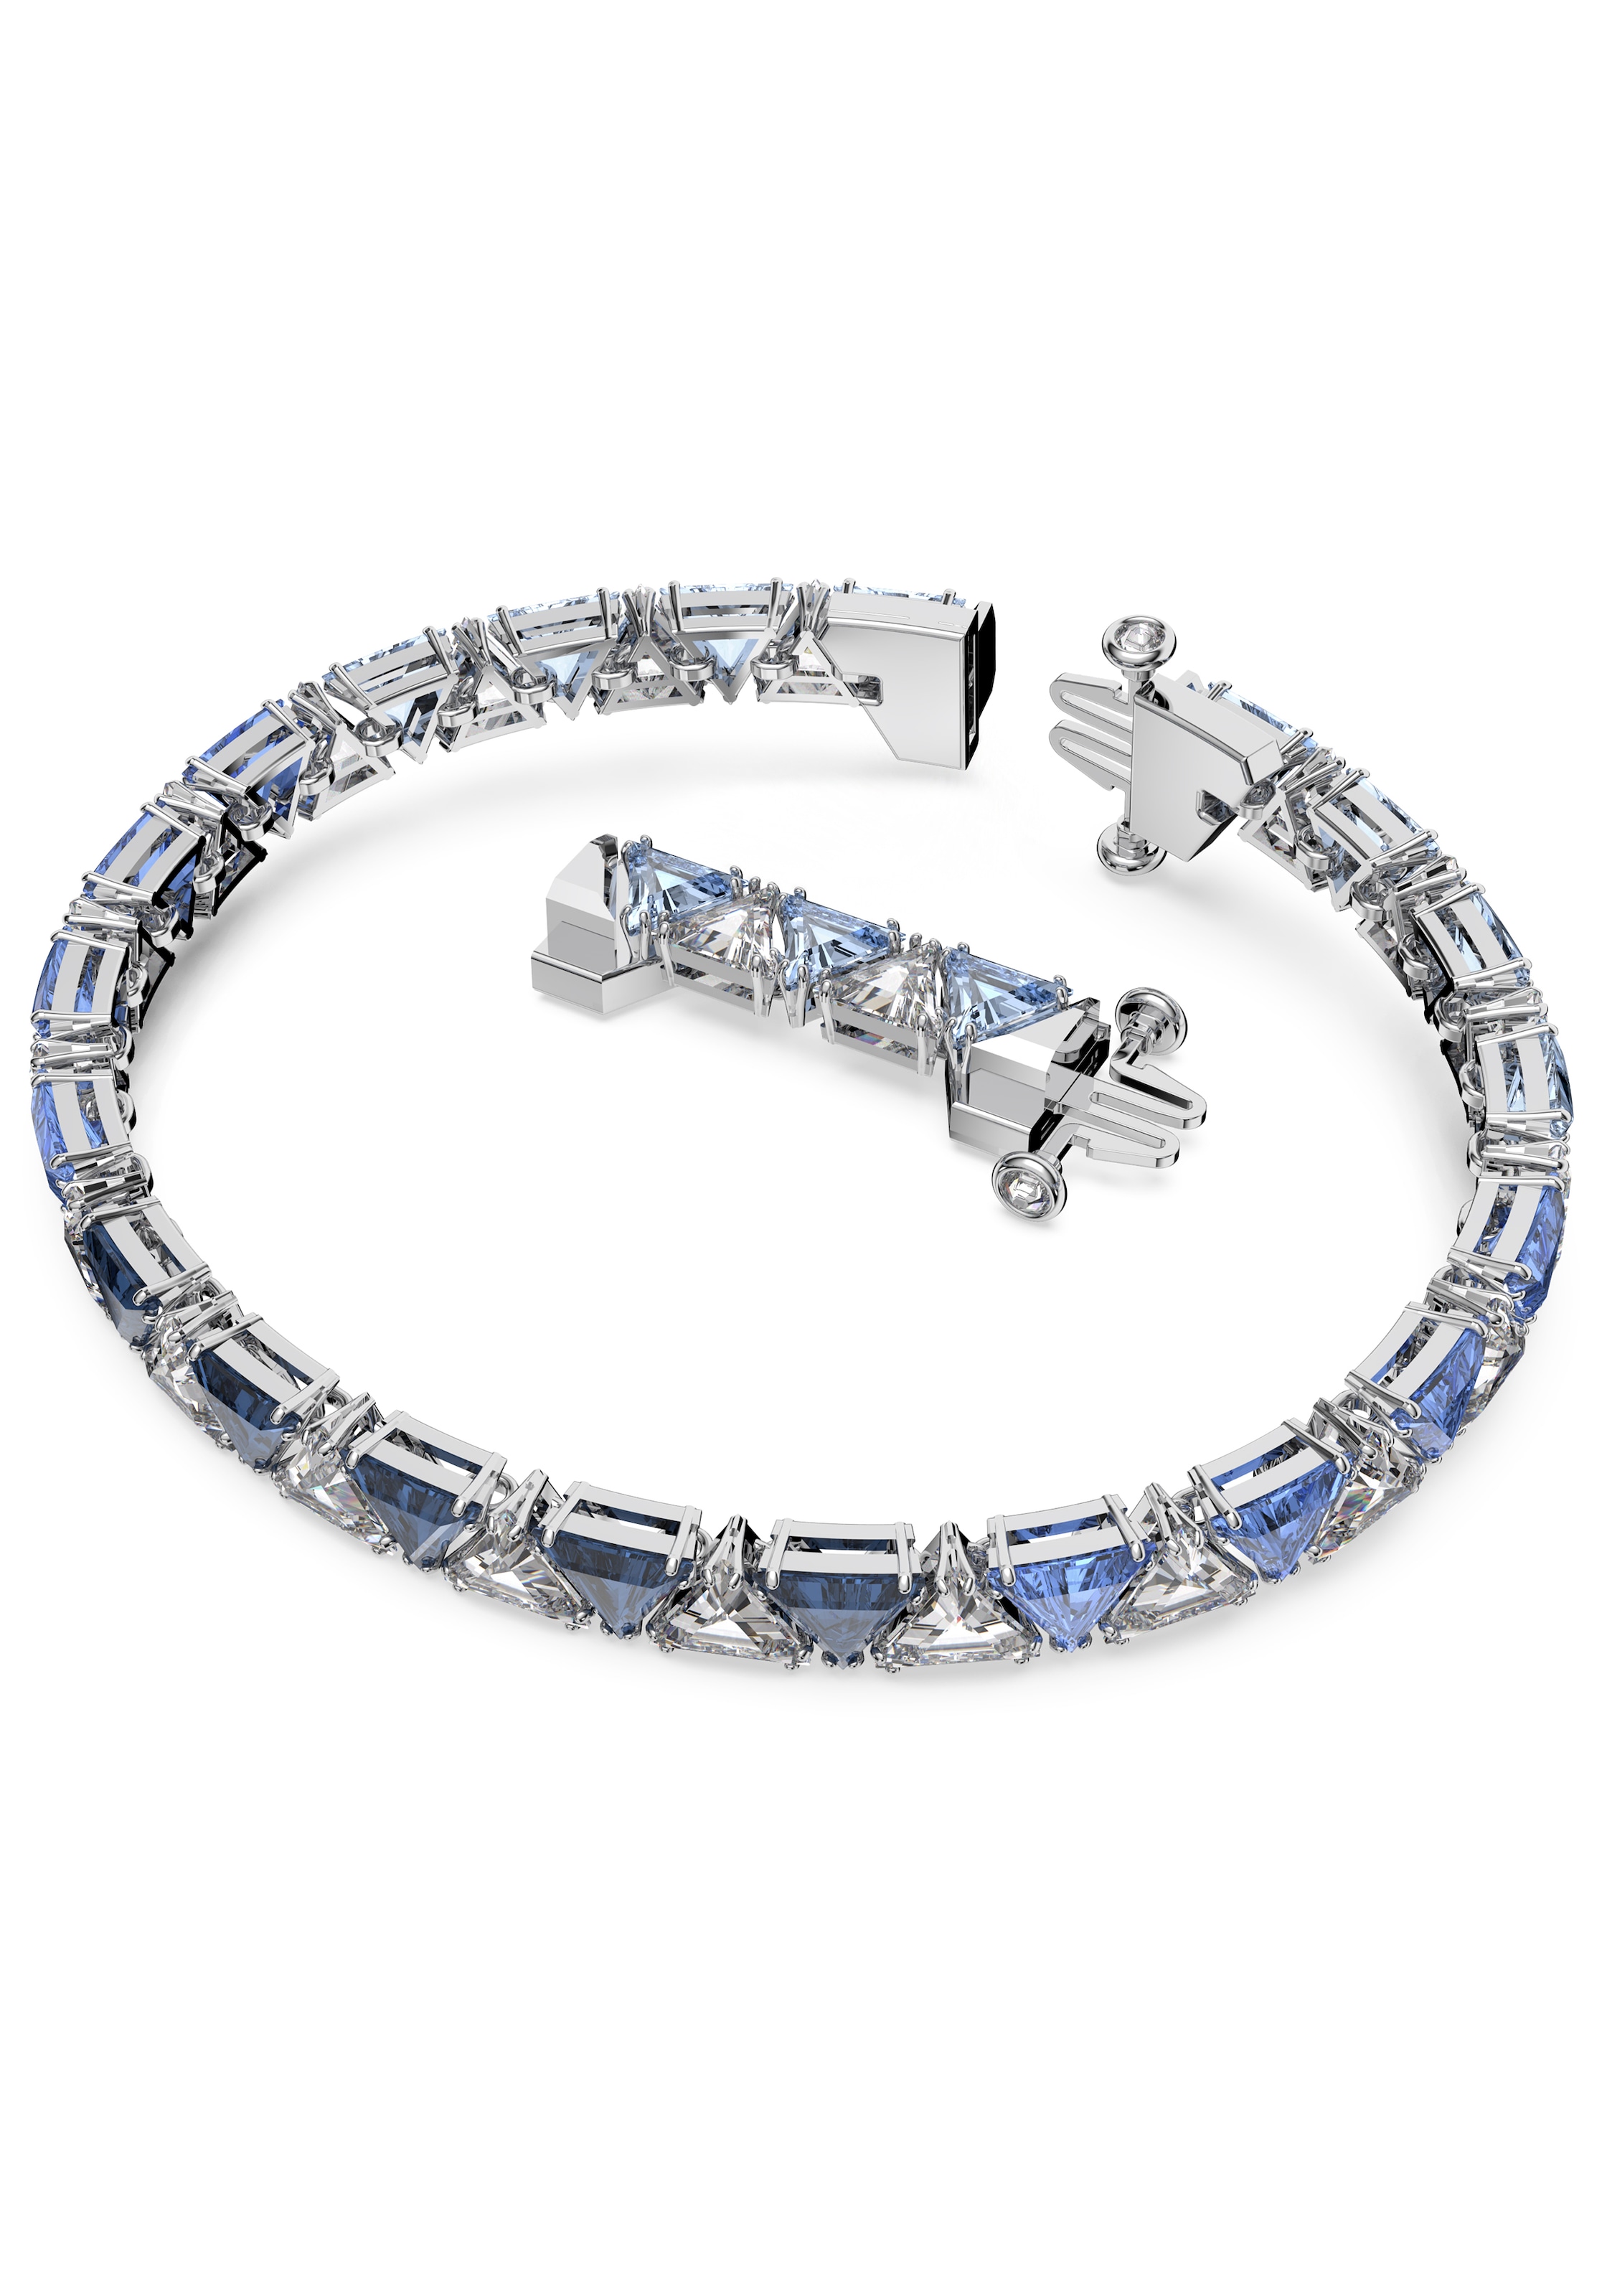 Frauen Schmuck Swarovski Armband in Silber - HI85593